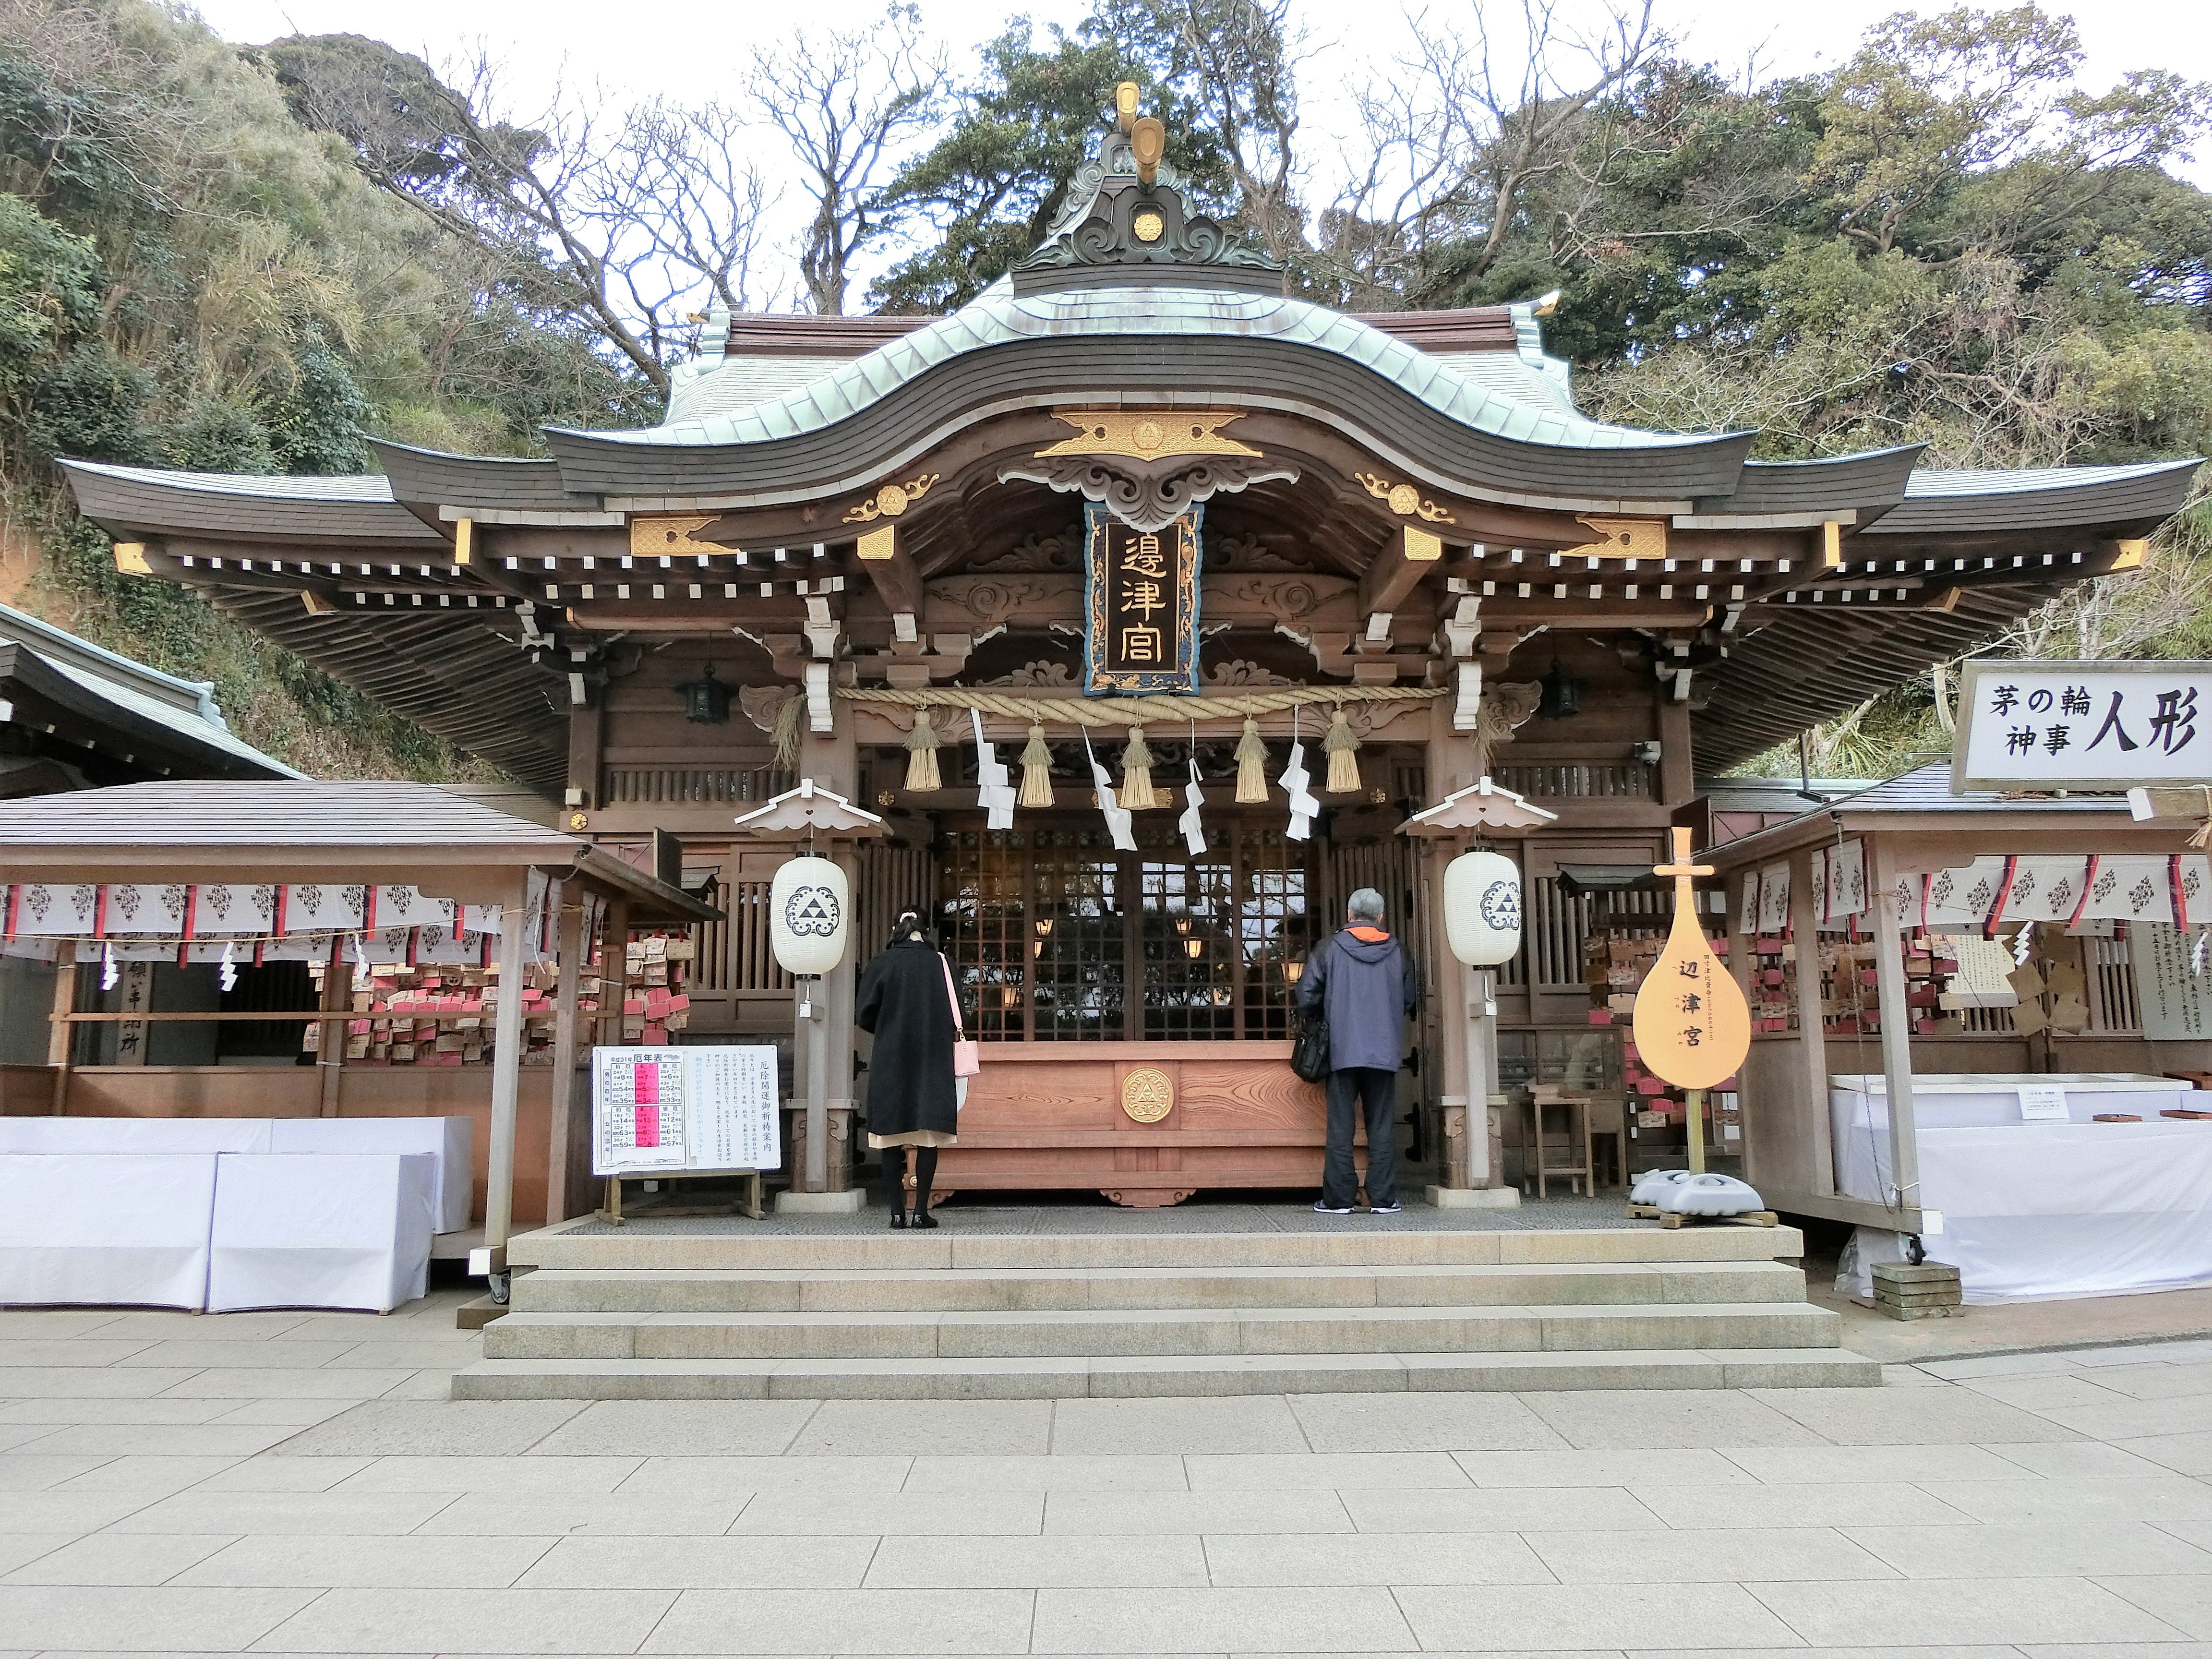 Enoshima Shrine Hetsumiya - 旅游景点点评- Tripadvisor